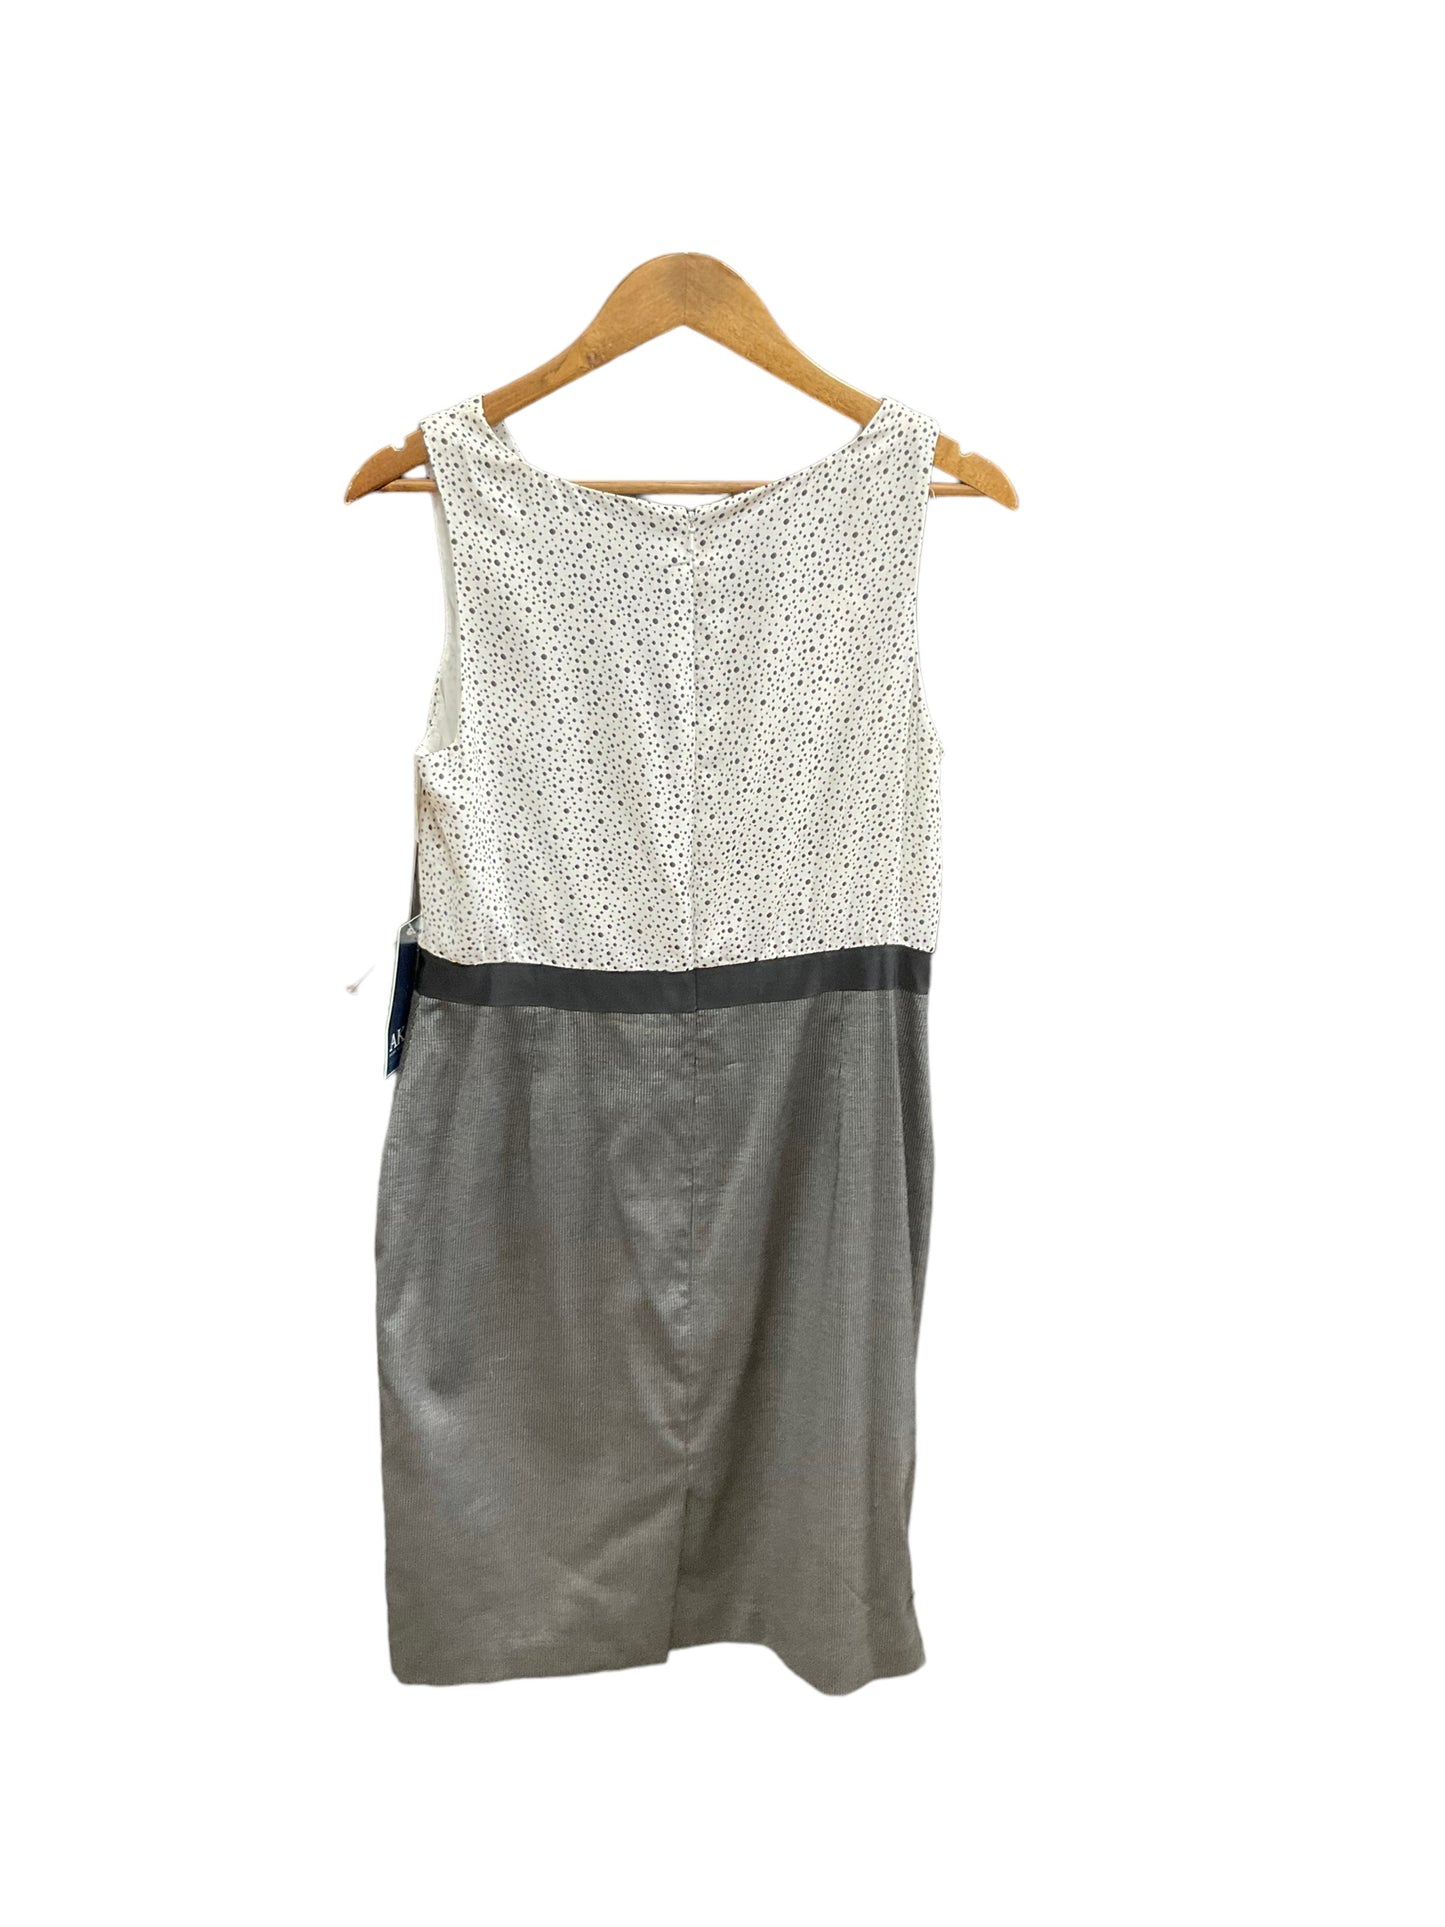 Dress Casual Short By Ak Anne Klein  Size: 10